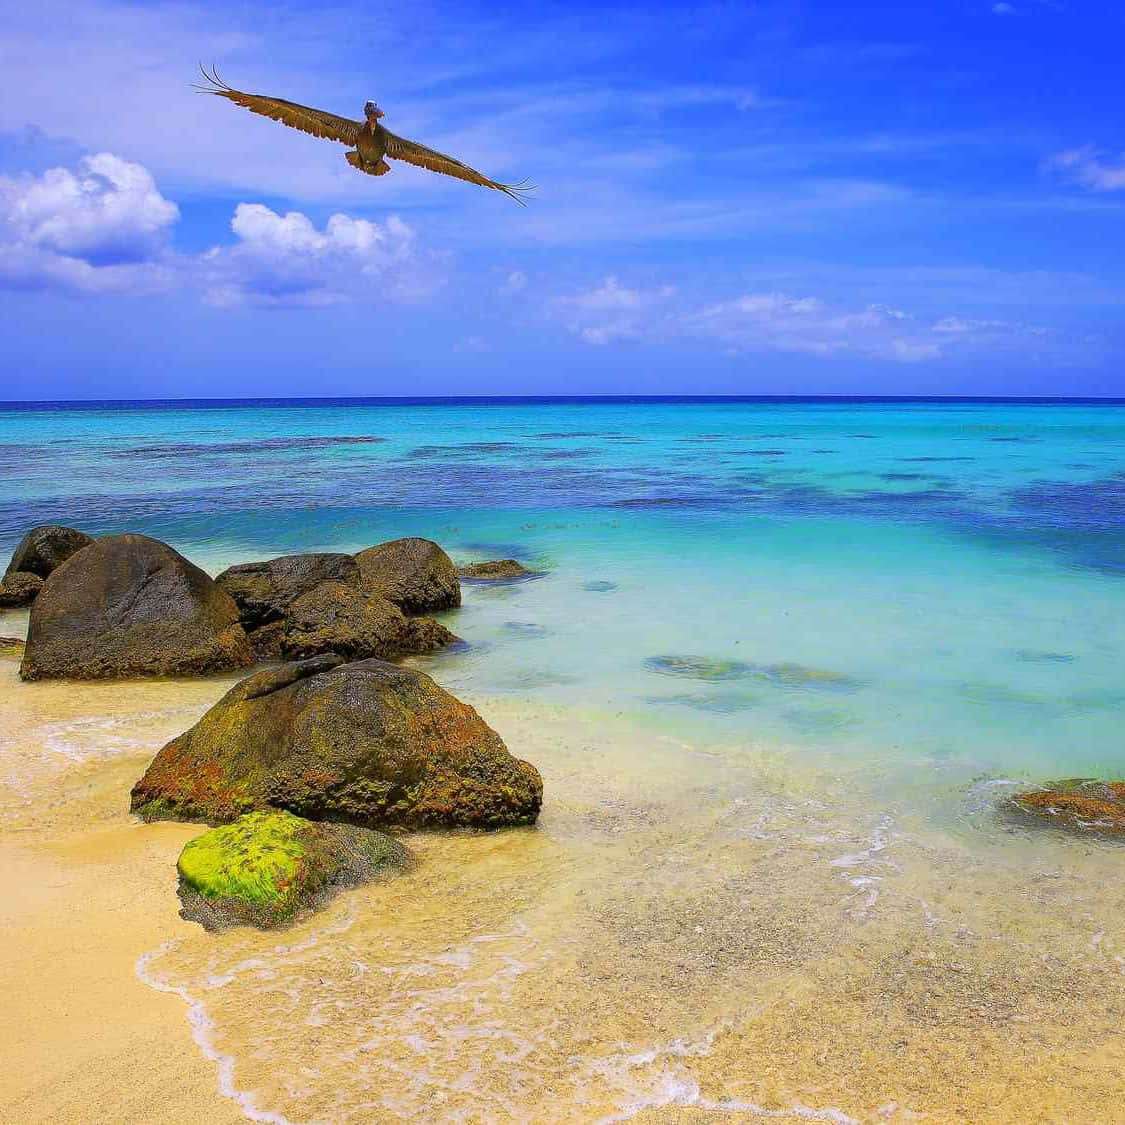 Caption: Vibrant Jamaican Beach Paradise